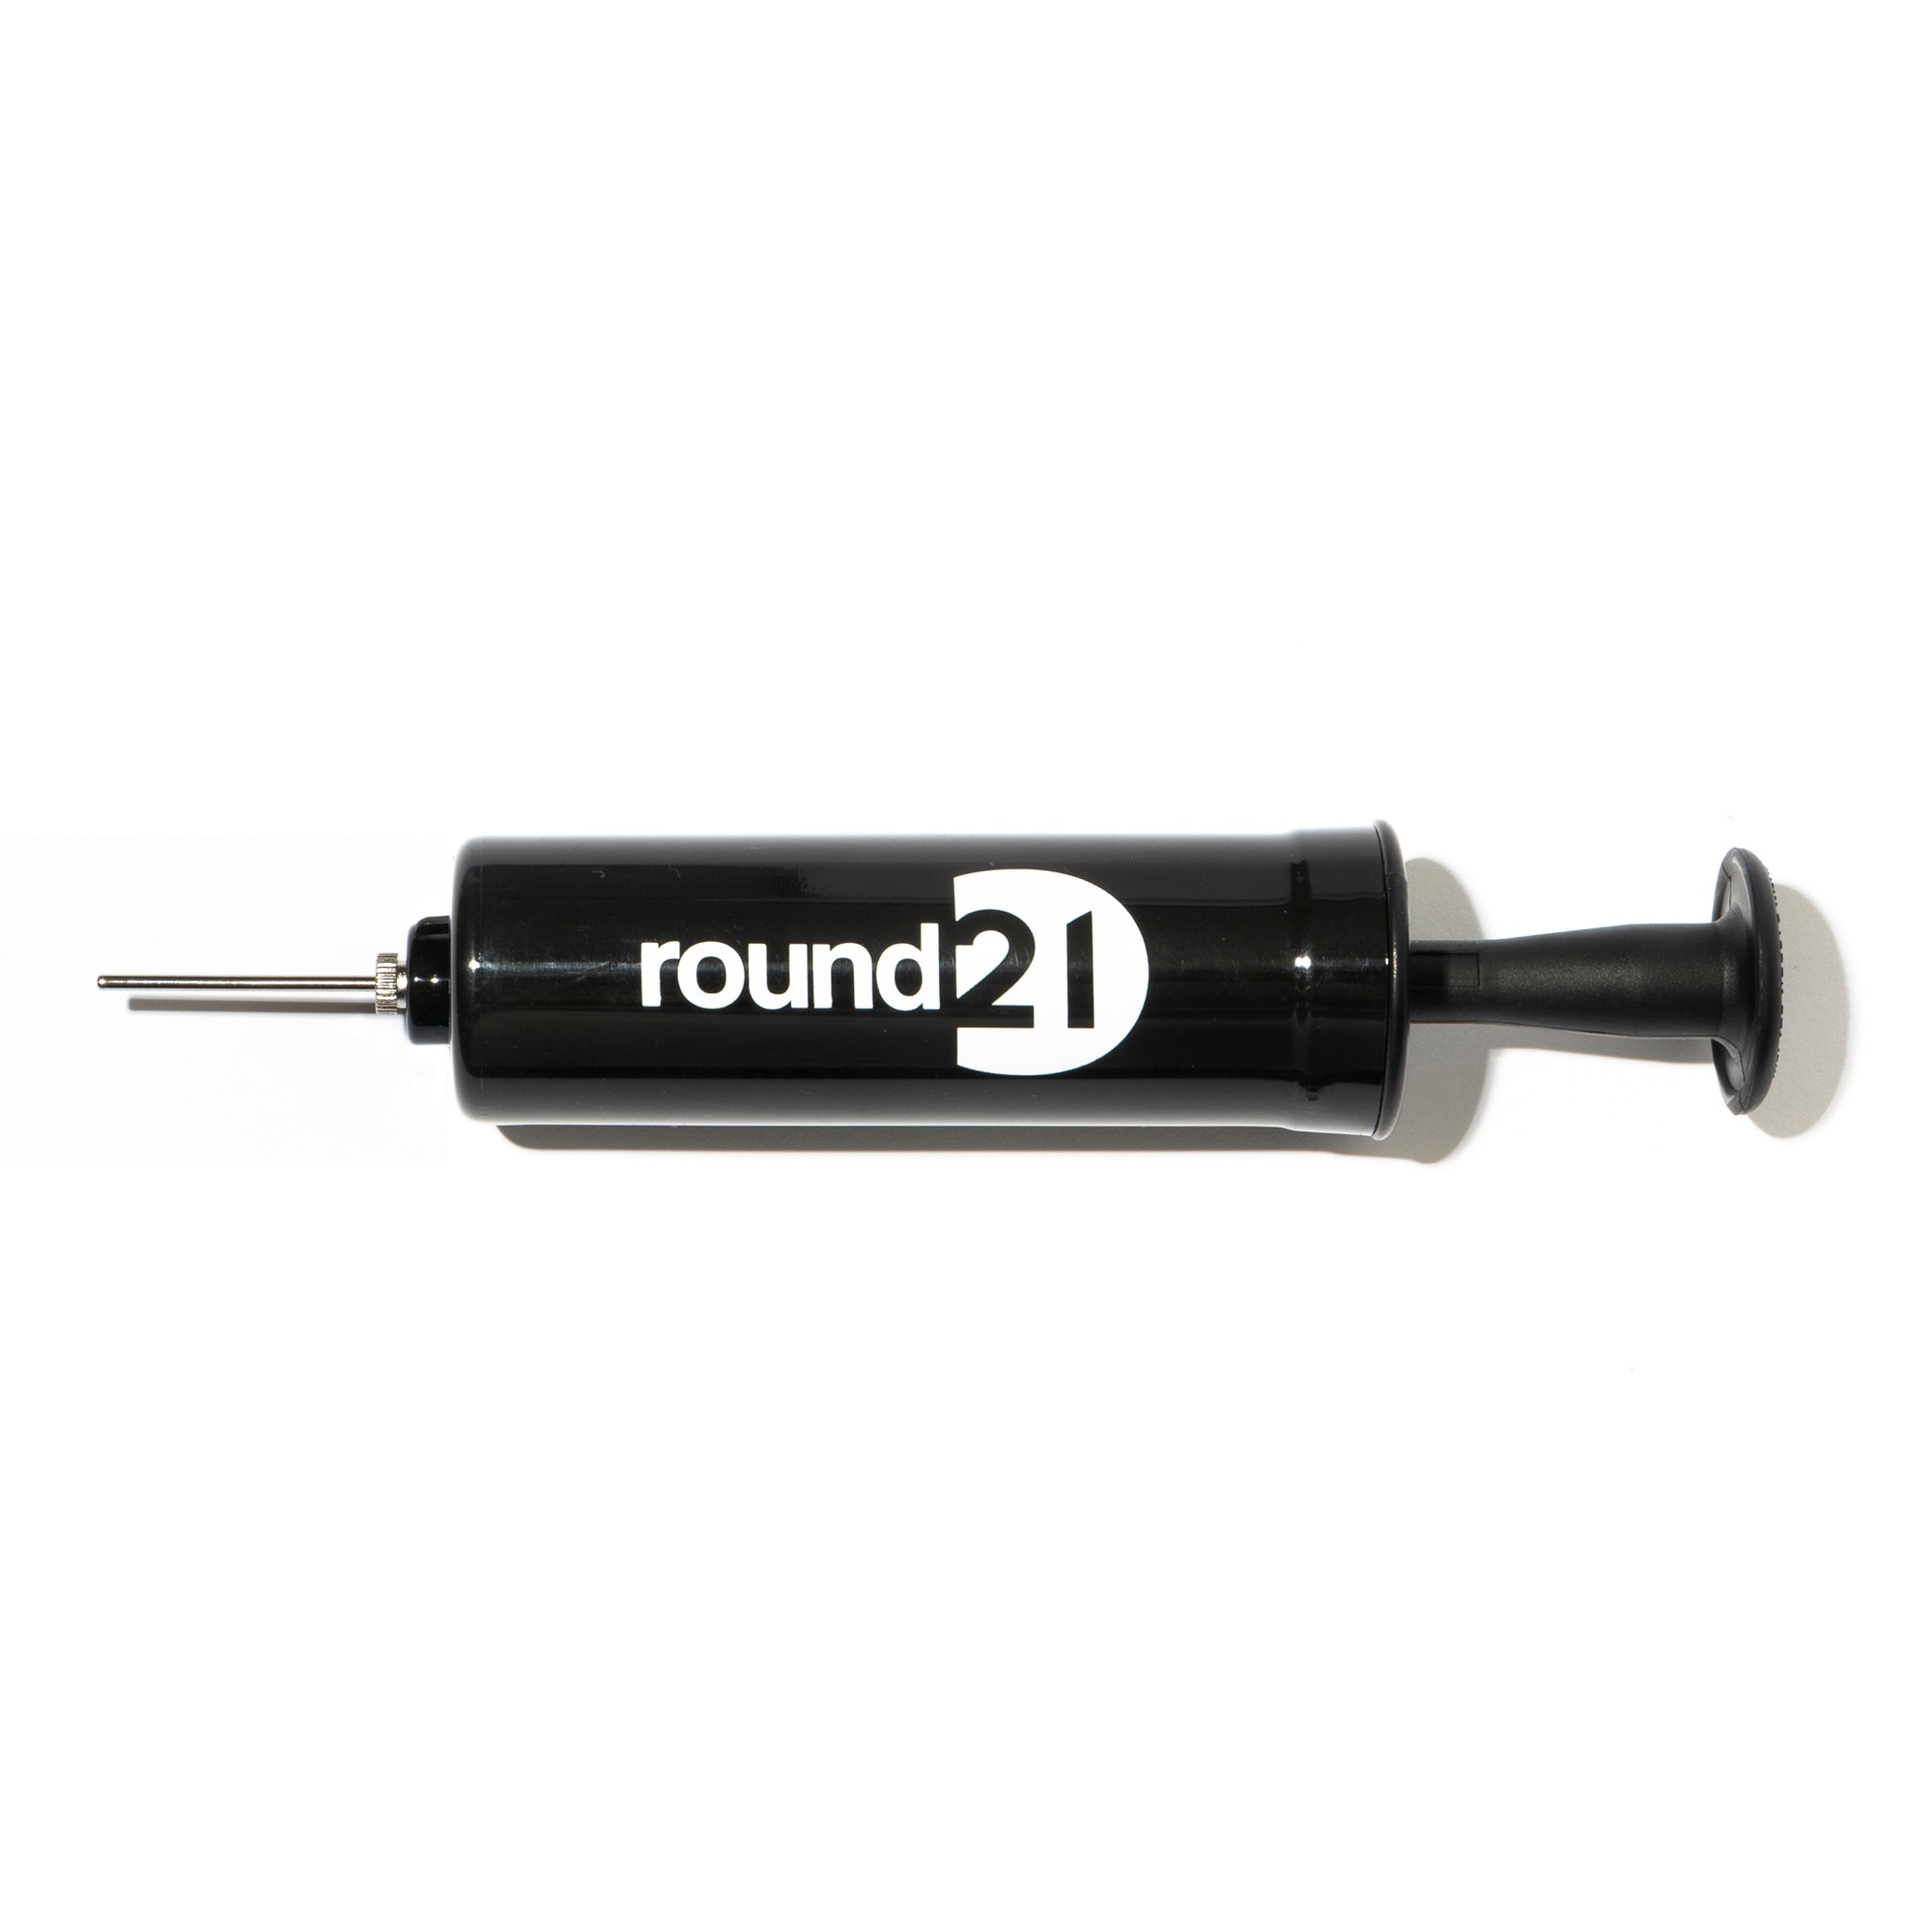 round21 Ball Pump